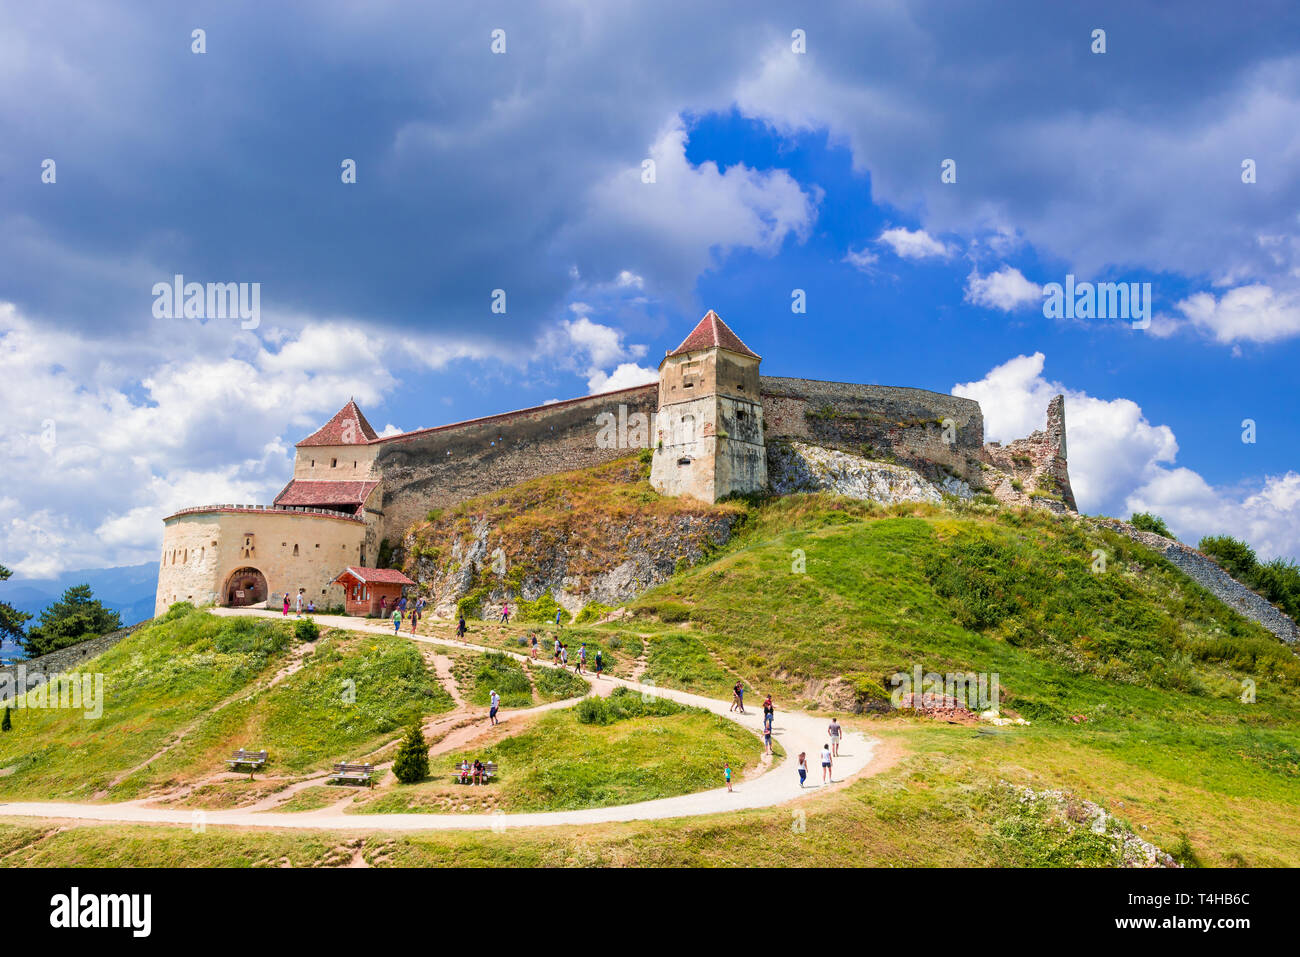 Medieval citadel in Rasnov city, Brasov, Transylvania, Romania Stock Photo